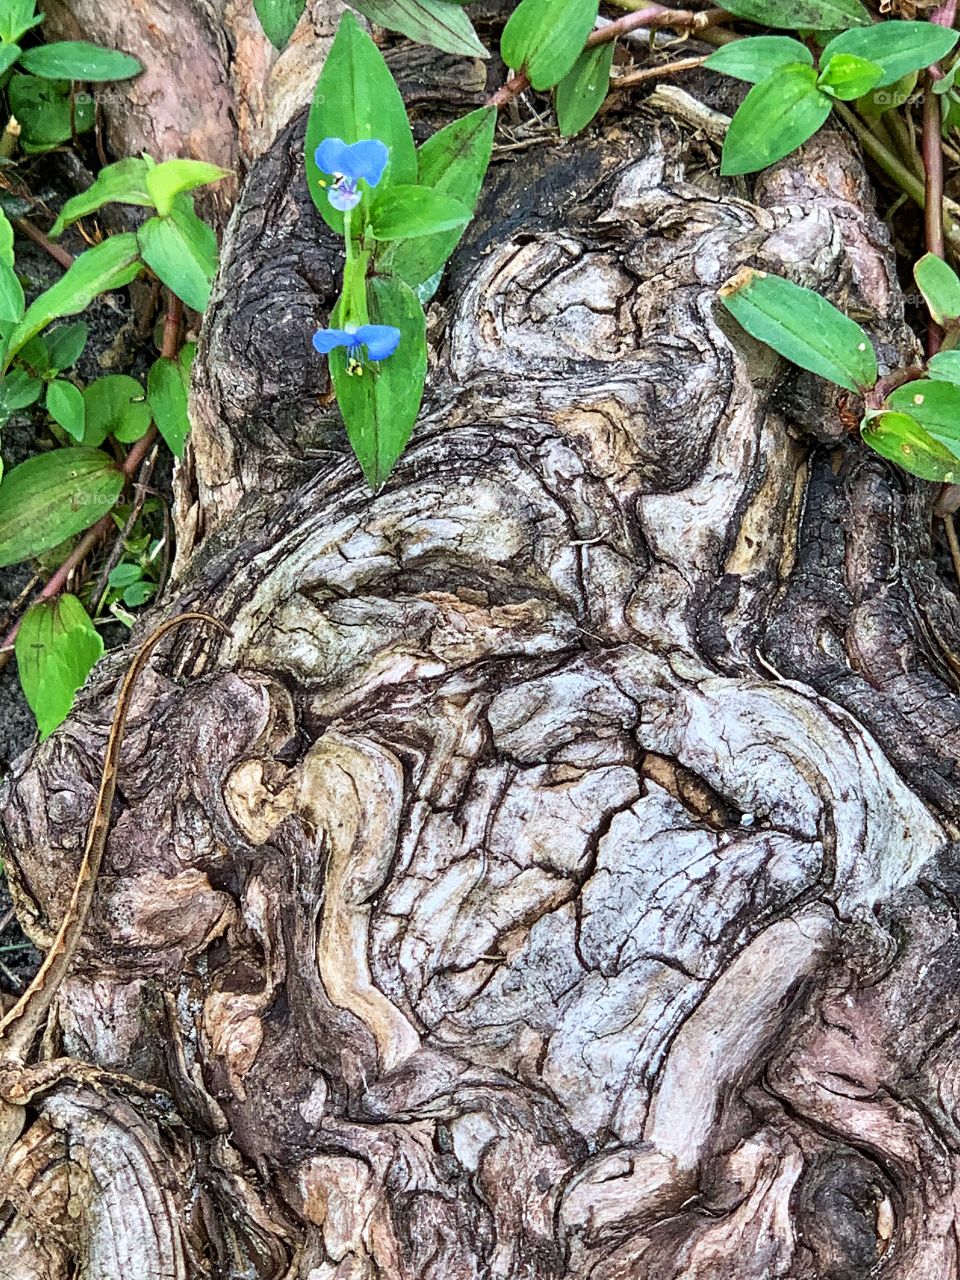 Tree stump graced by little blue flowers